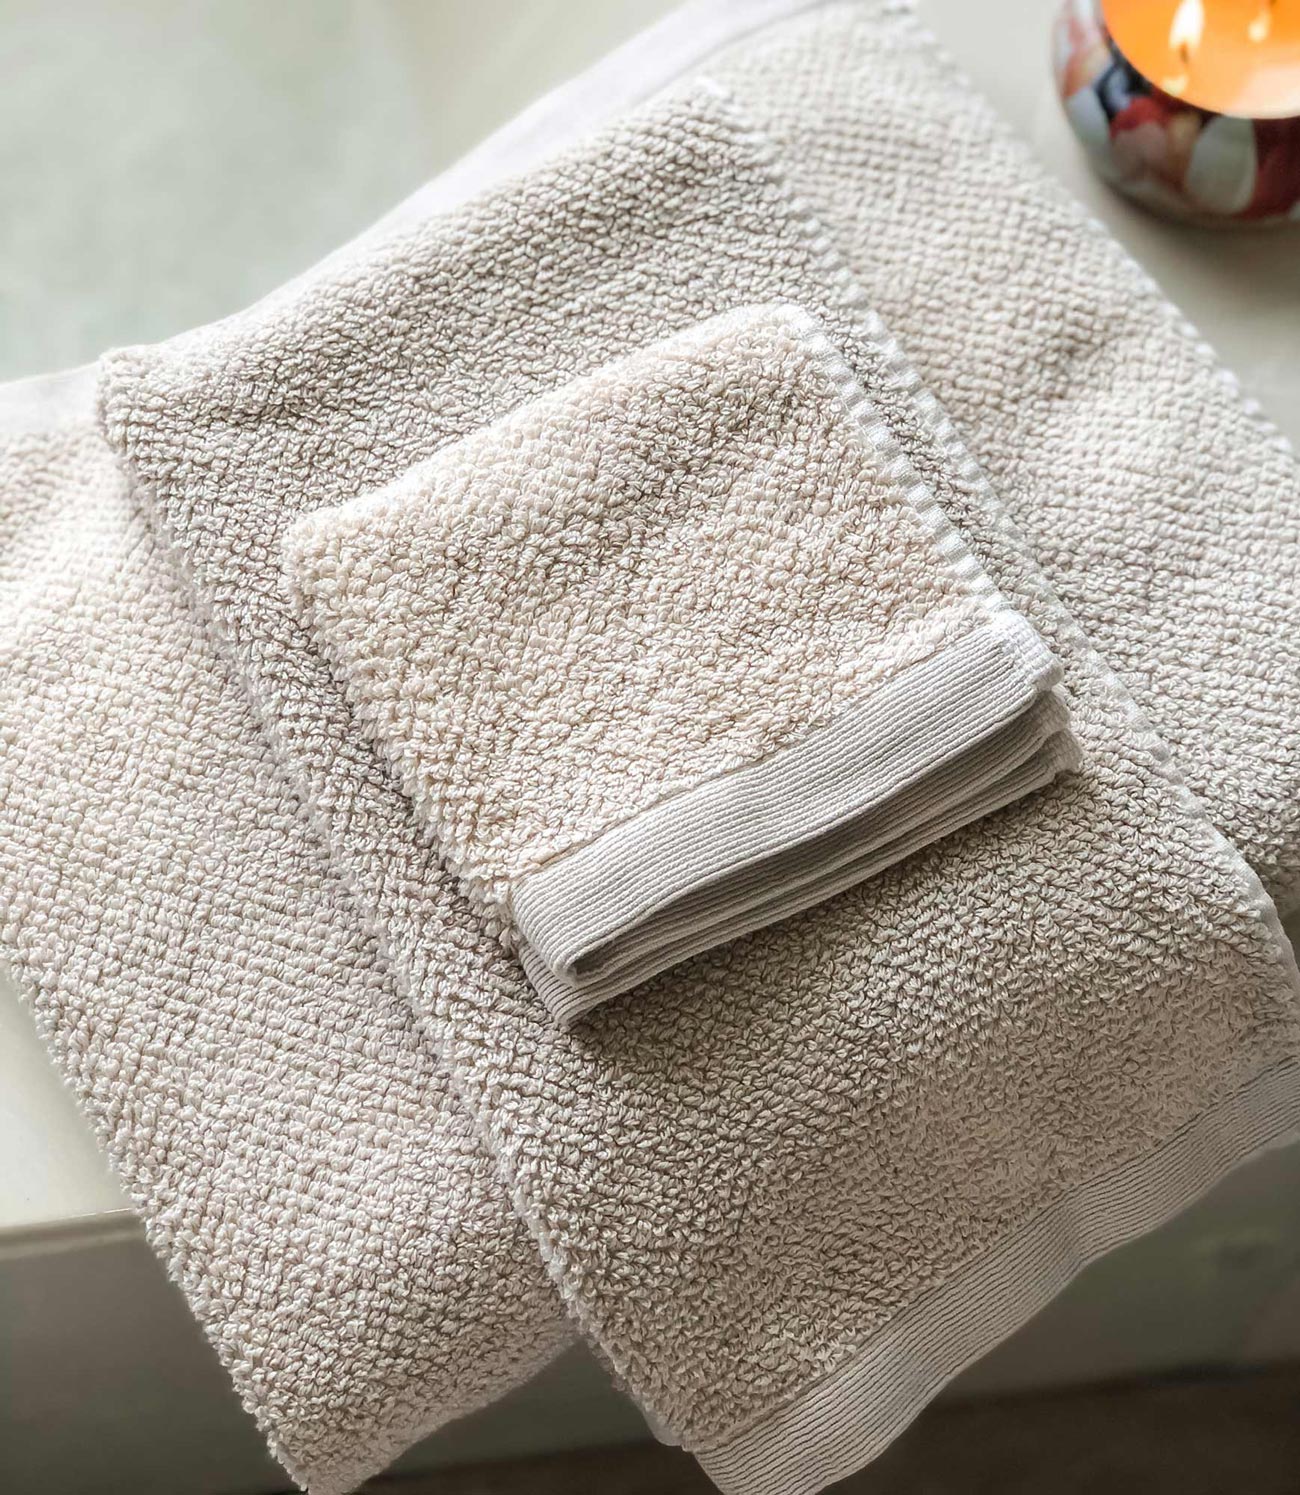 Jubilee Bath Towels folded on bathtub, Linen